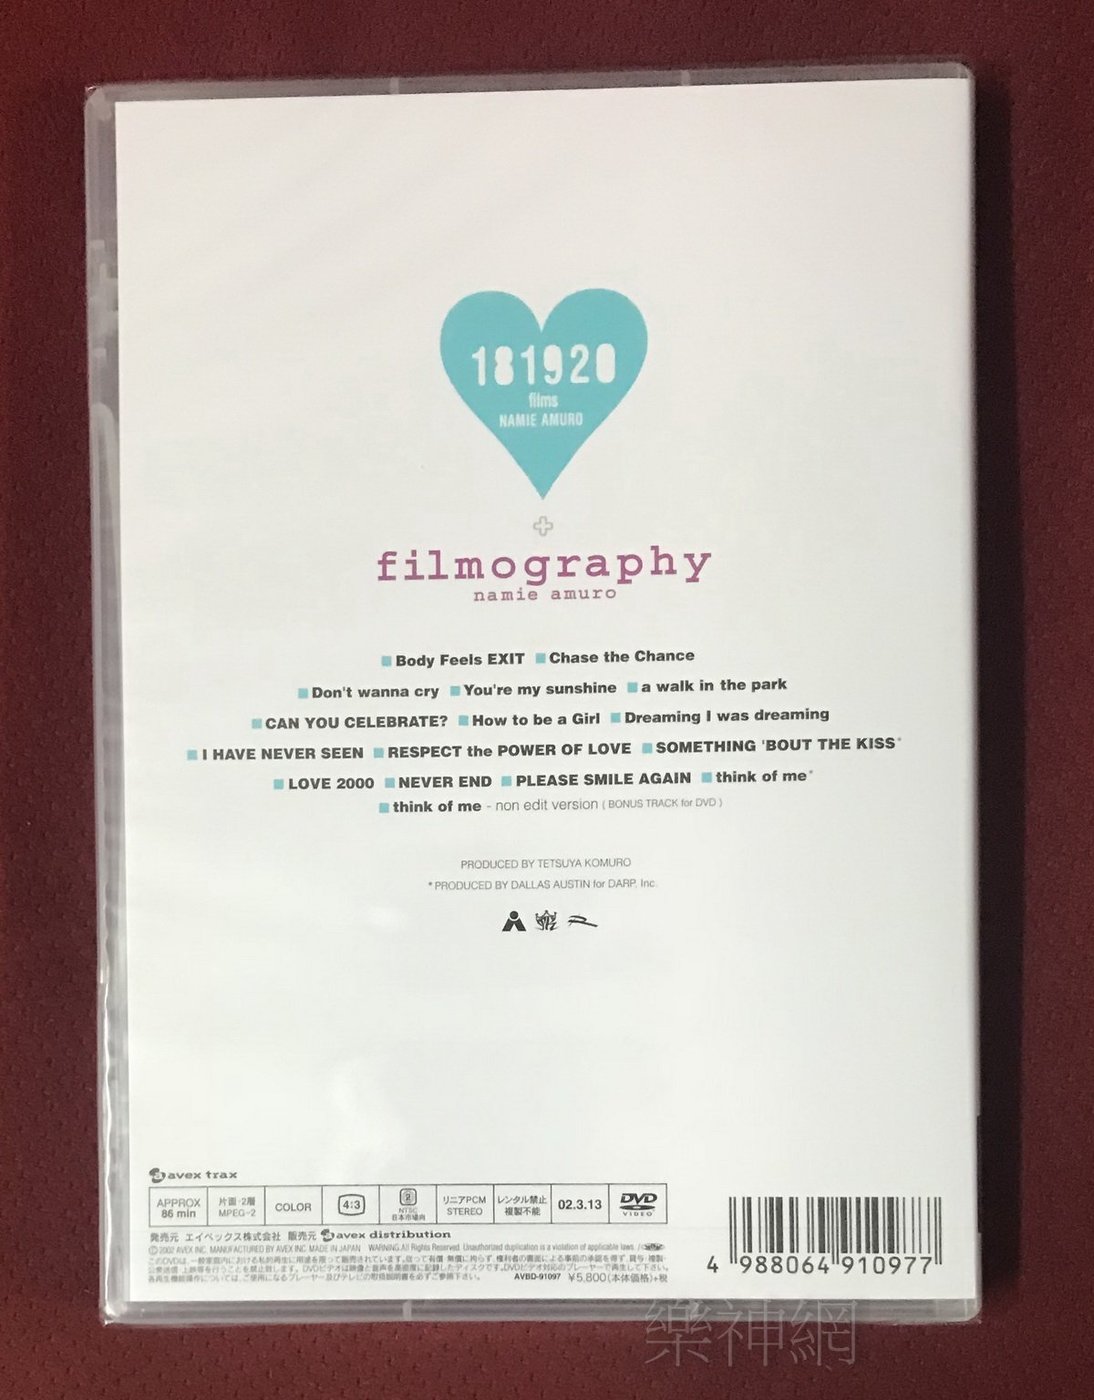 安室奈美惠namie amuro 181920 films + filmography (日版DVD) 18 19